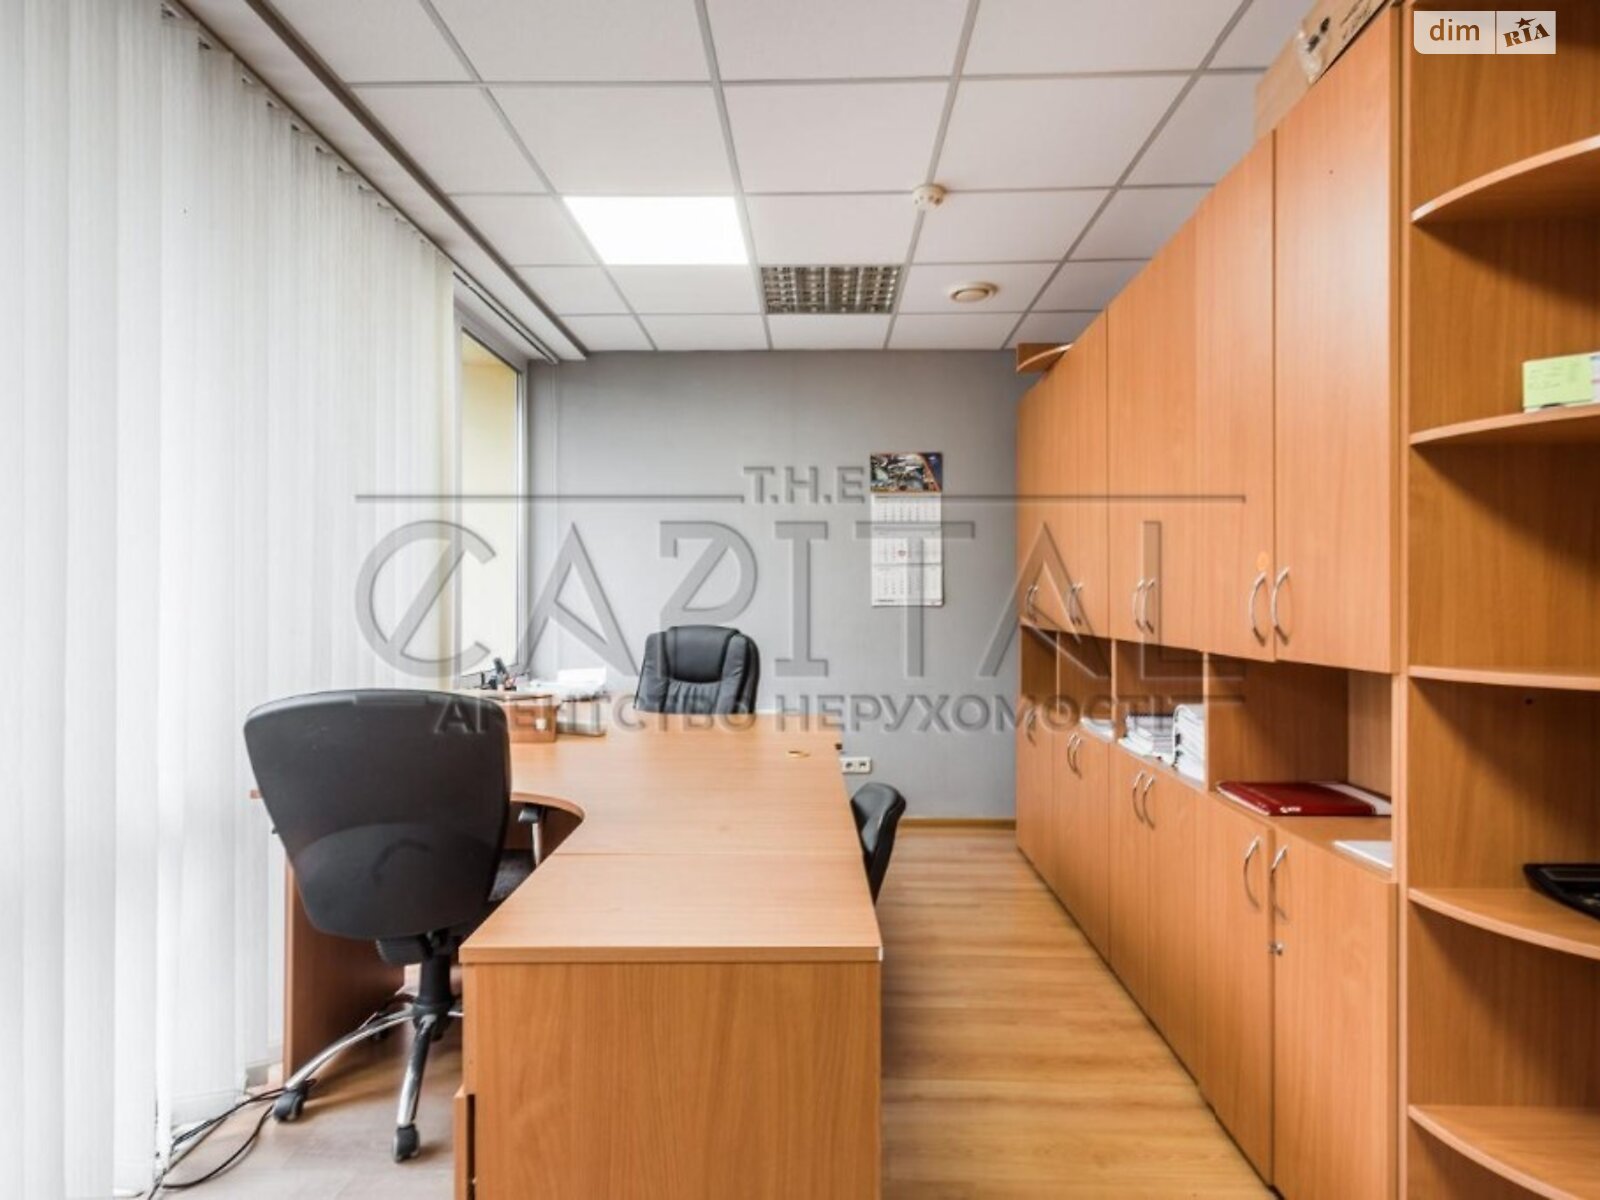 Офисное помещение на 1005 кв.м. в Киеве фото 1